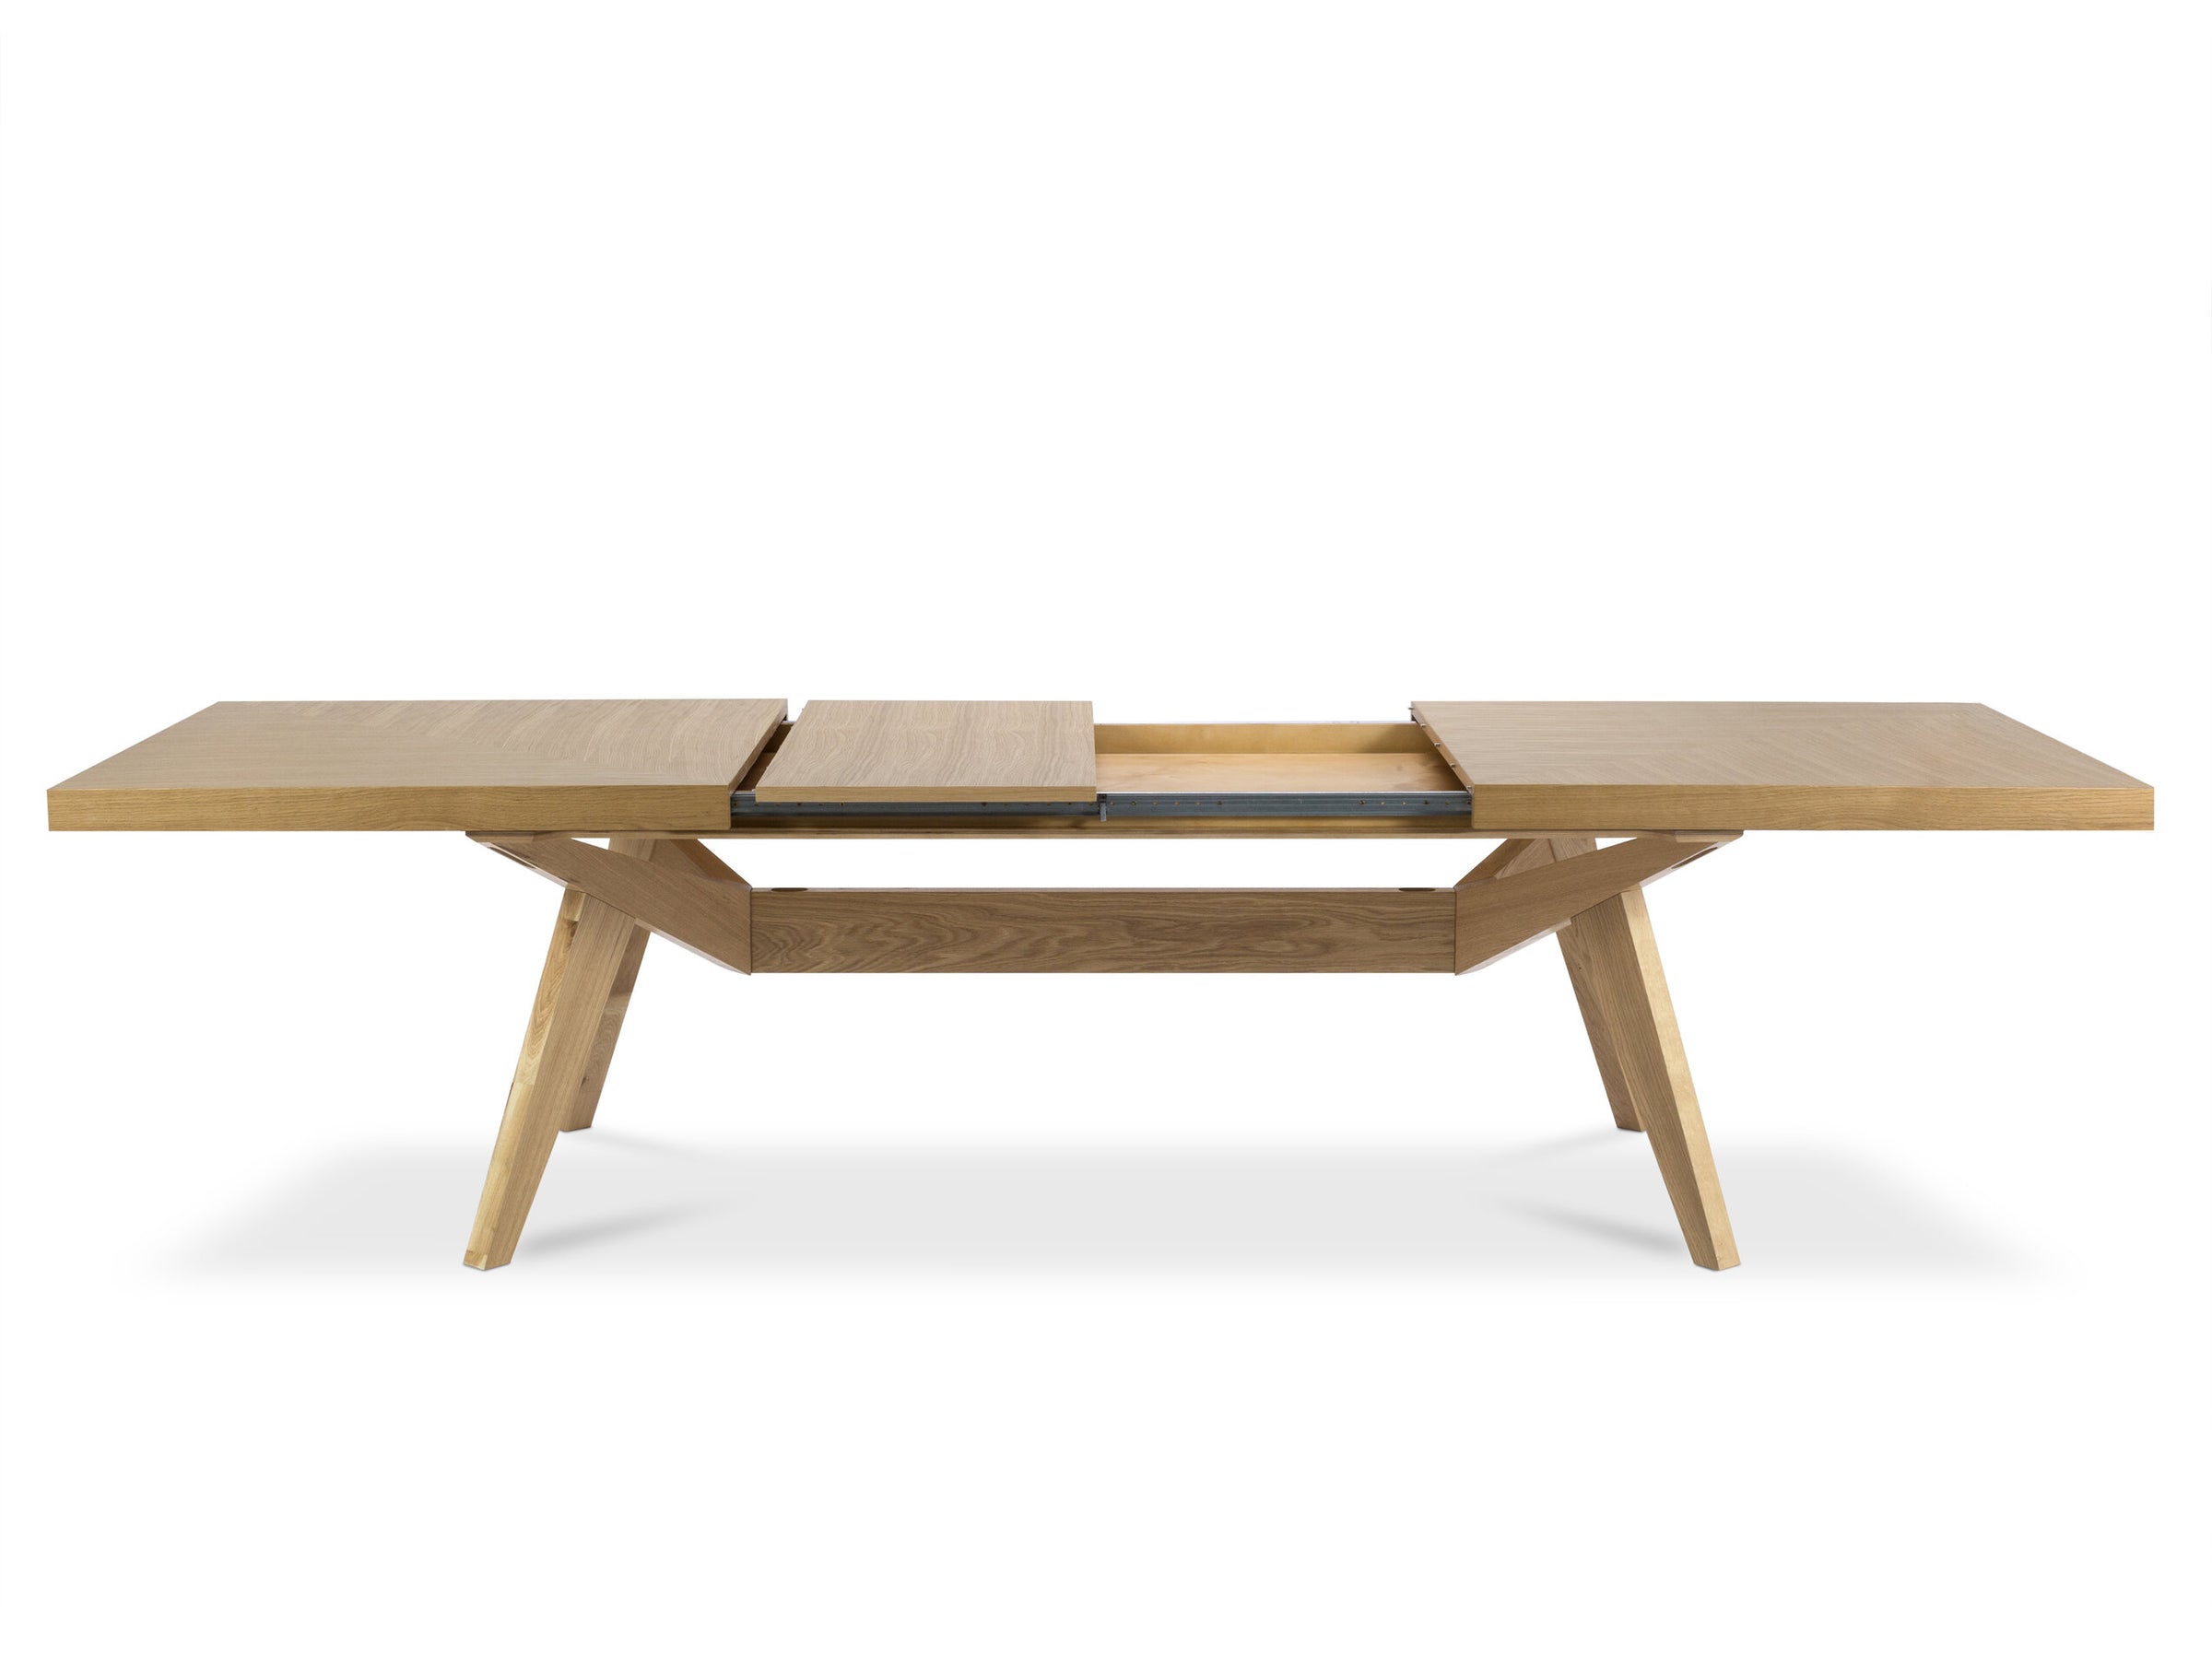 Richie tables & chairs wood natural oak veneer